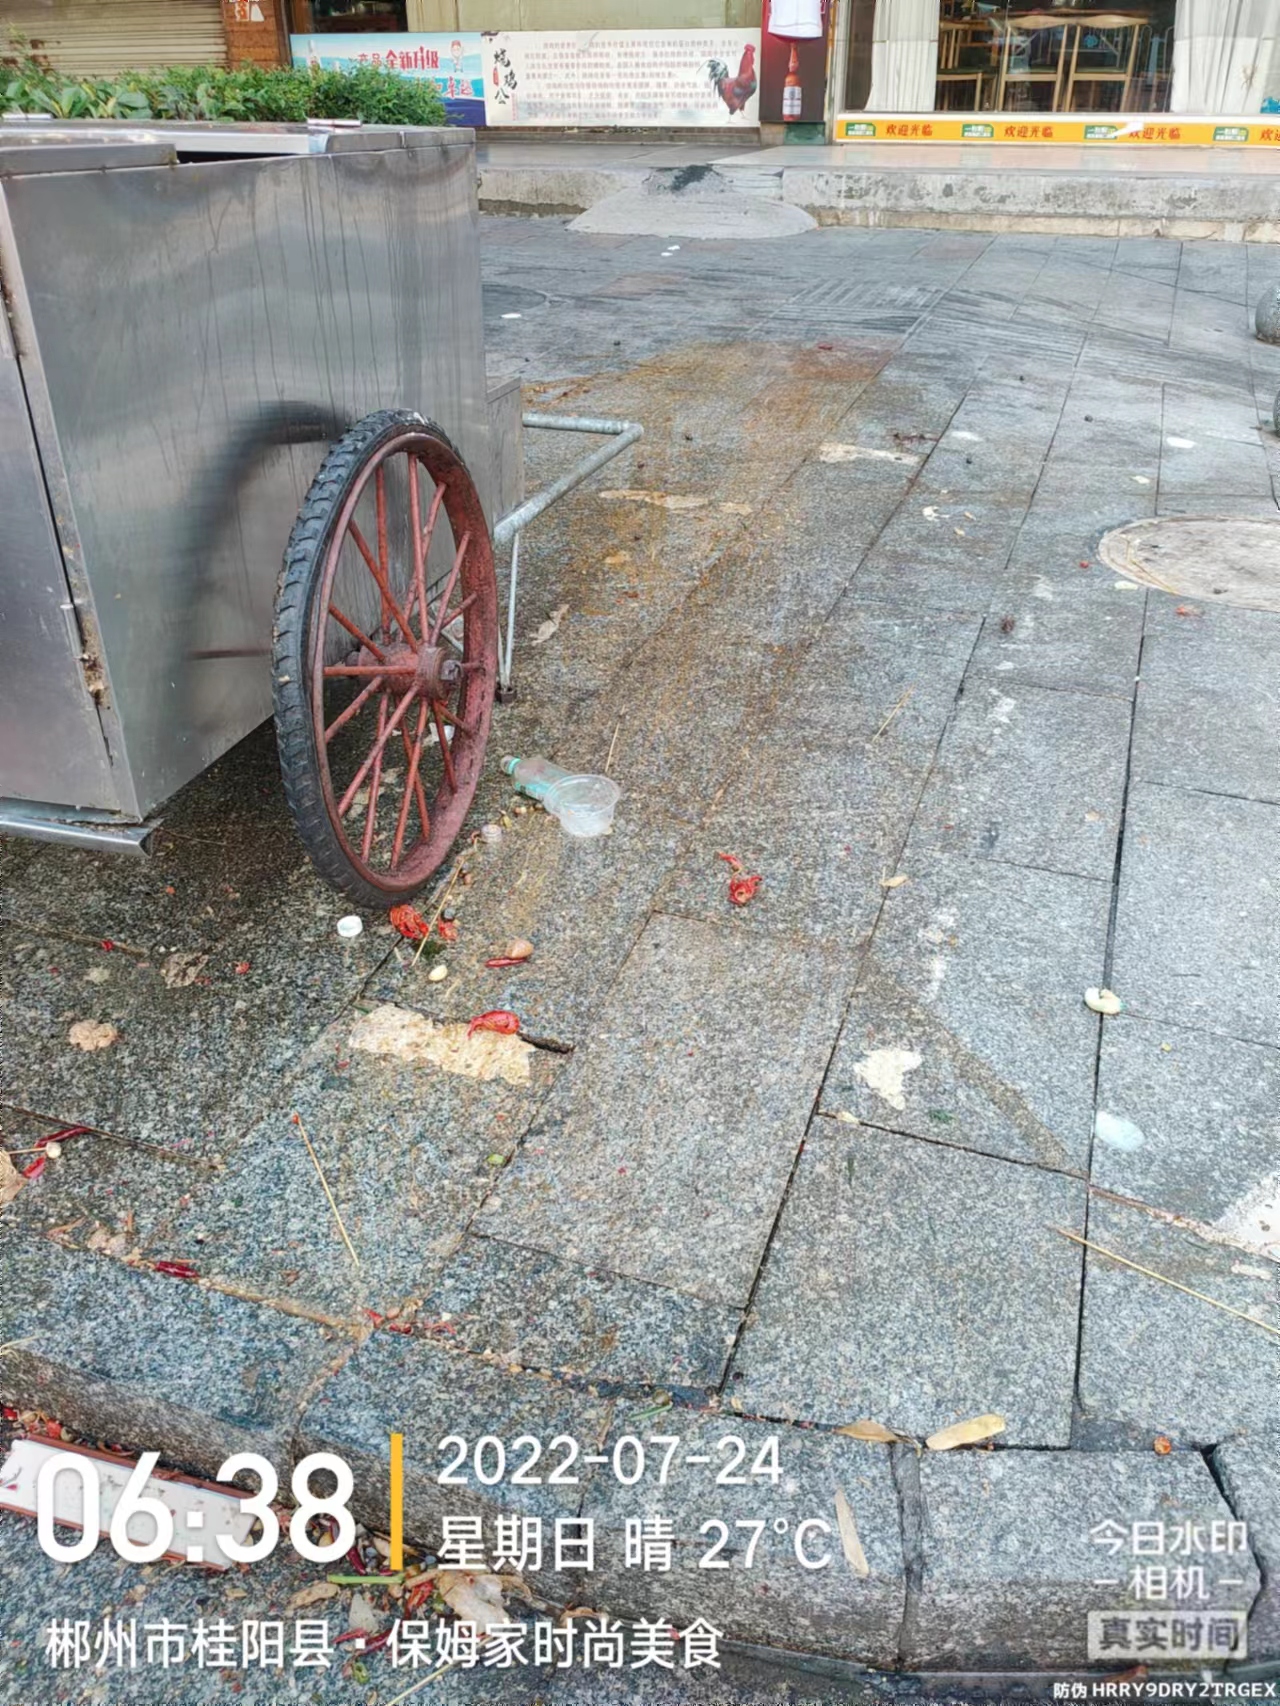 欧阳海路烤匪店每天晚上把厨房垃圾倒在板车周边，造成地面全是油污